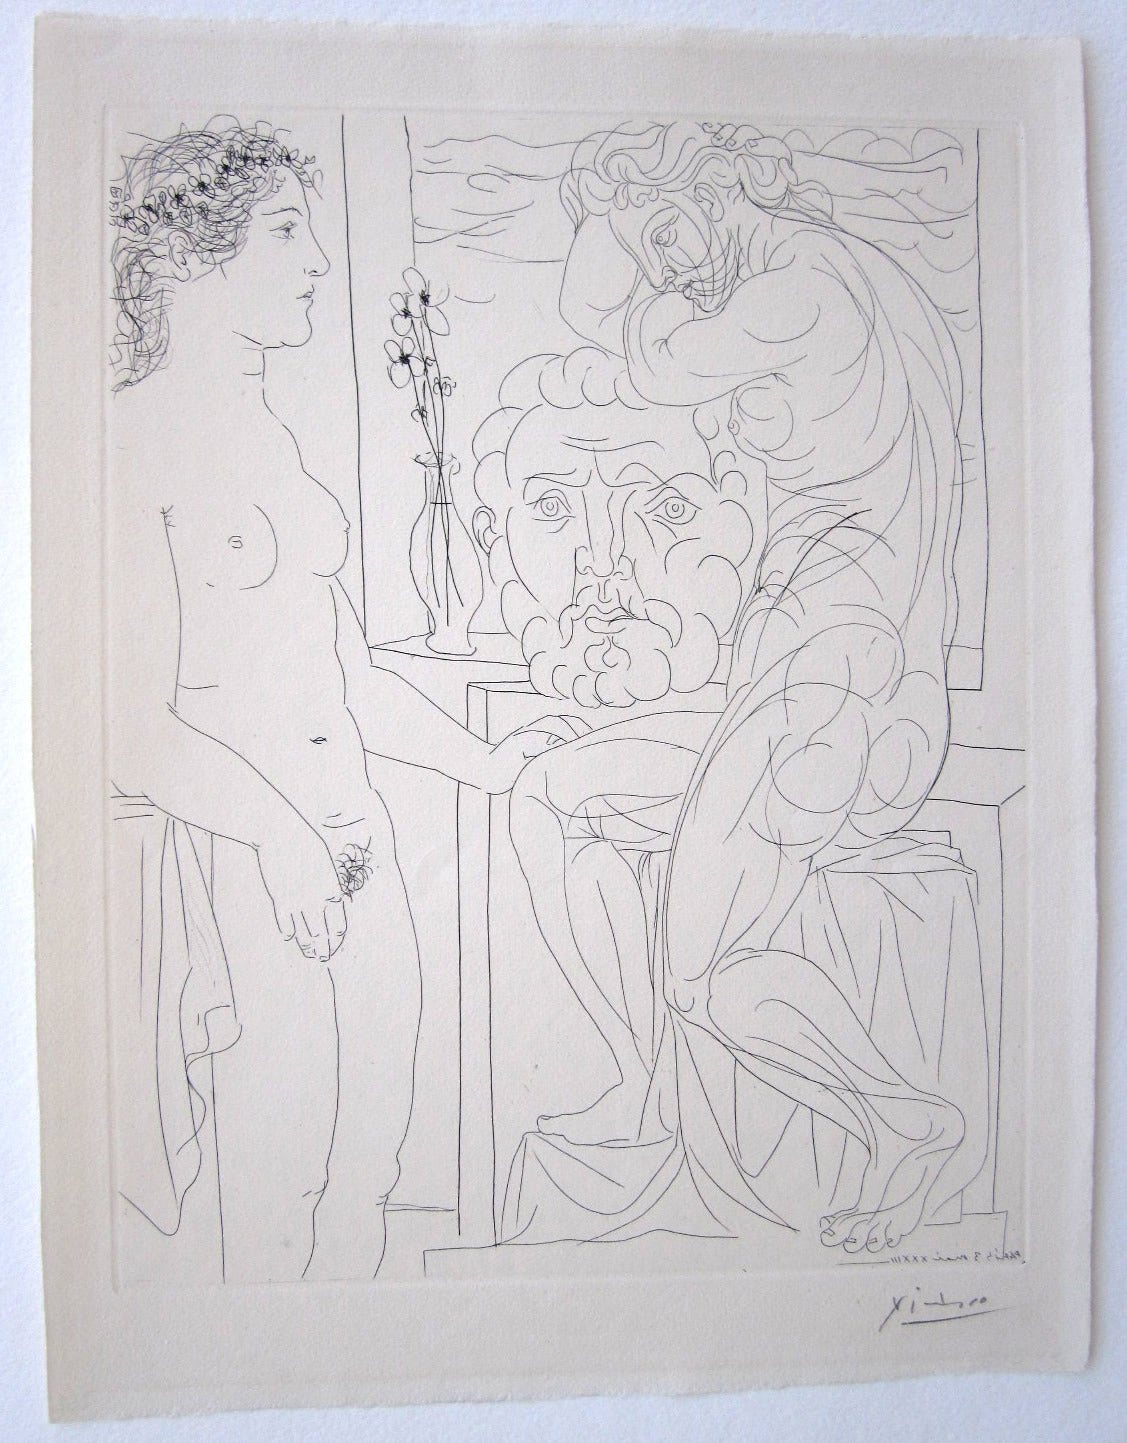 Suite Vollard- Modele nu et Sculptures - Print by Pablo Picasso